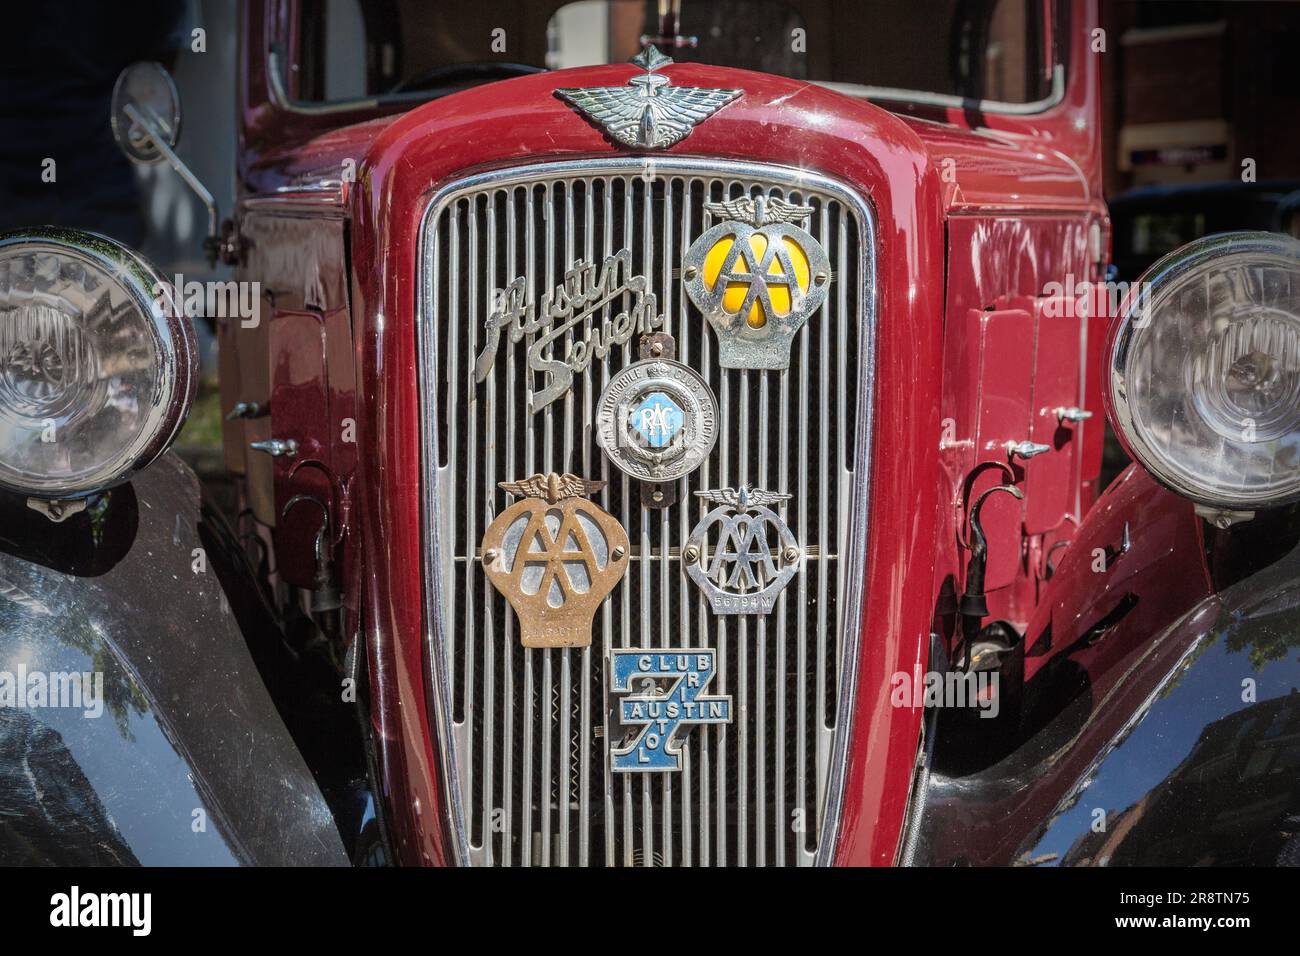 Vue de face détaillée d'une Austin Seven rouge des années 1930 avec divers badges motorisés sur la calandre. Austin Ruby à un salon de voitures classiques et vintage. Banque D'Images